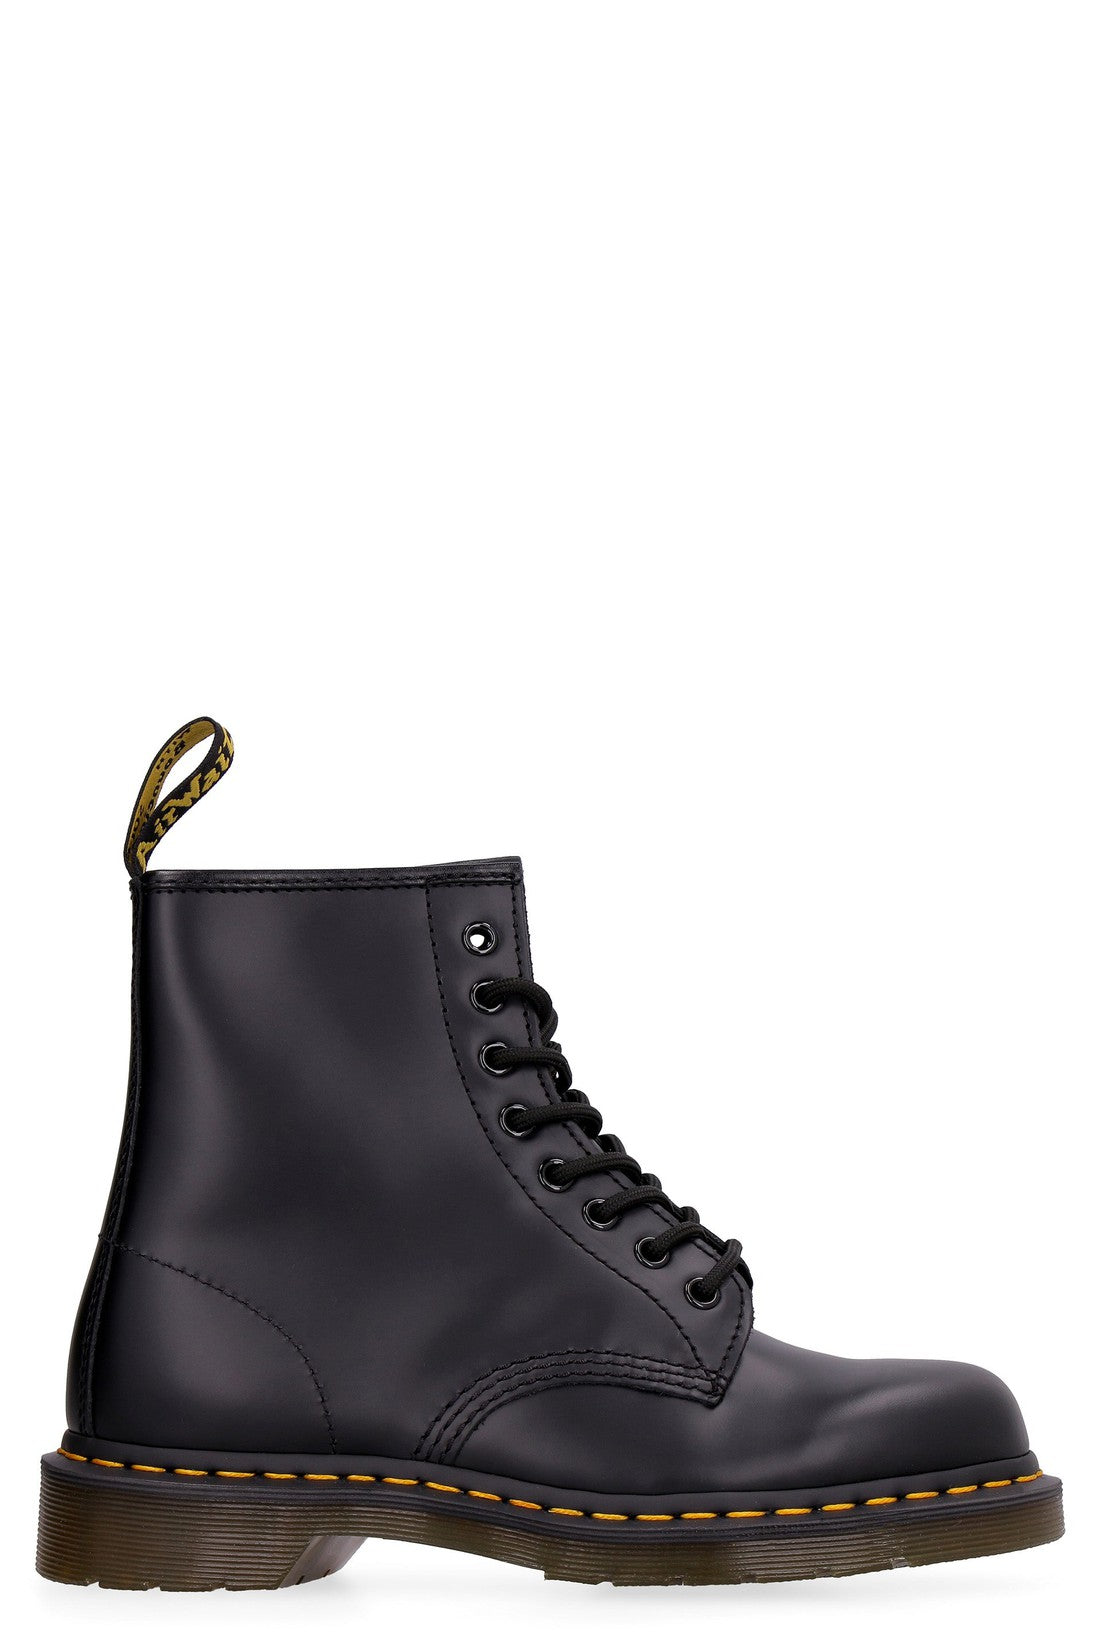 Dr. Martens-OUTLET-SALE-1460 leather combat boots-ARCHIVIST